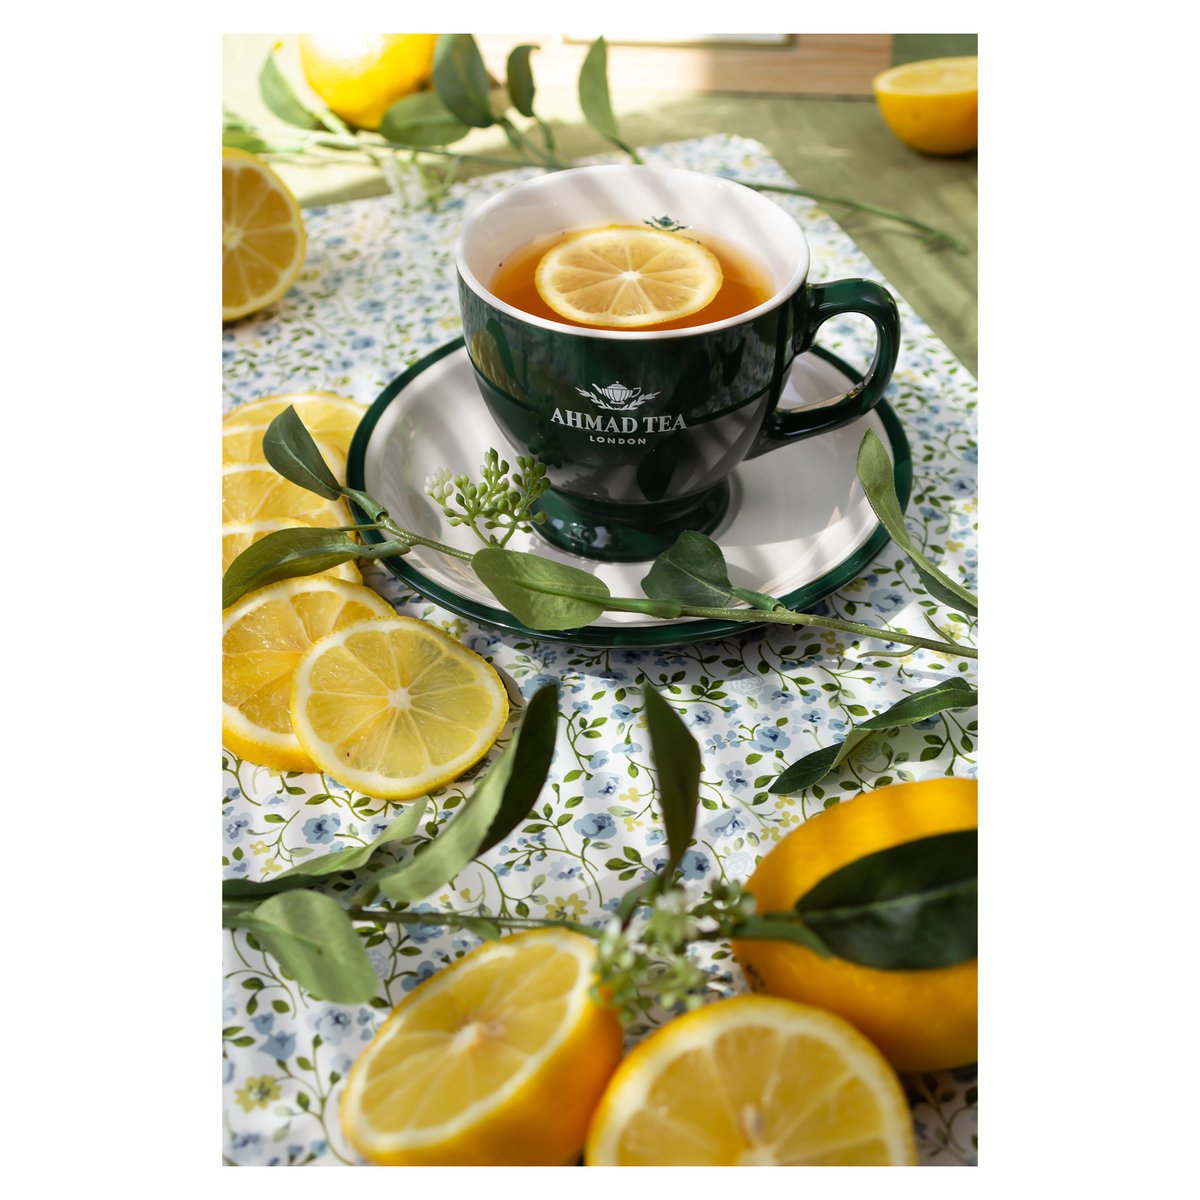 Ahmad Tea Lemon Green Tea 20 Teabags